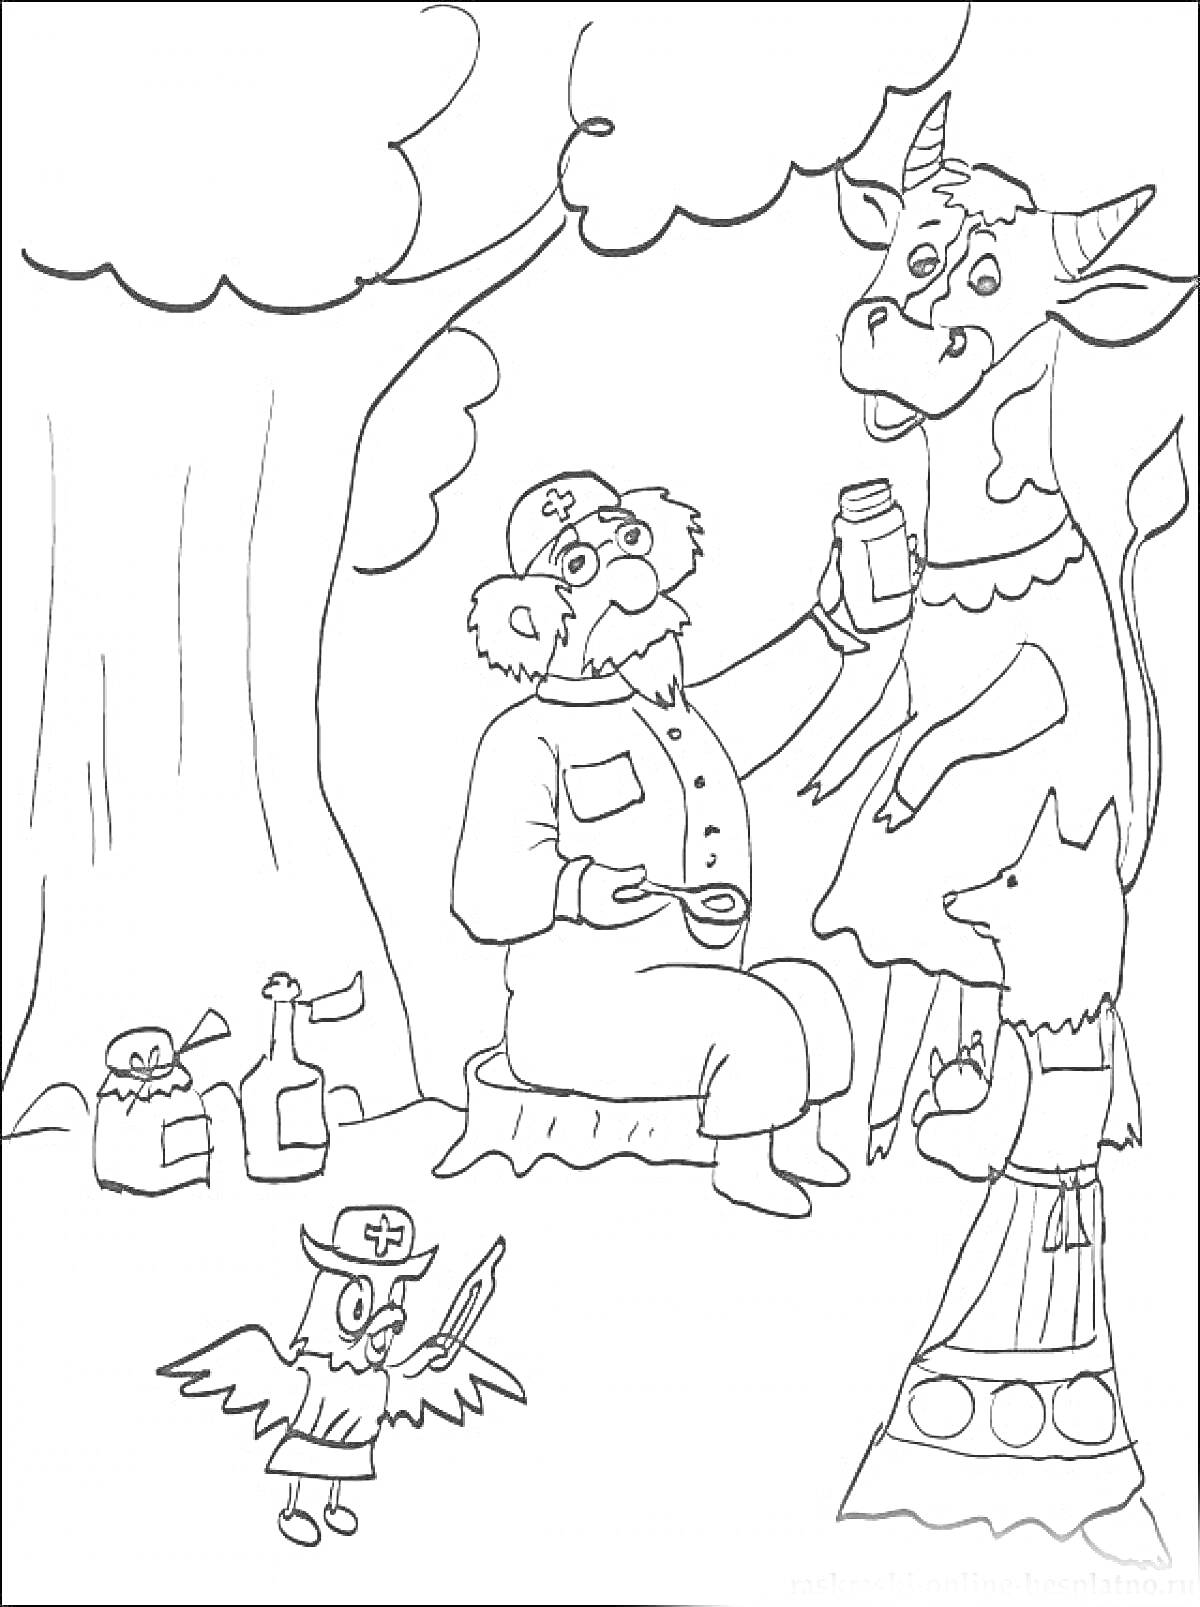 Раскраска Доктор Айболит лечит корову с помощью помощников-сова и лиса, под деревом